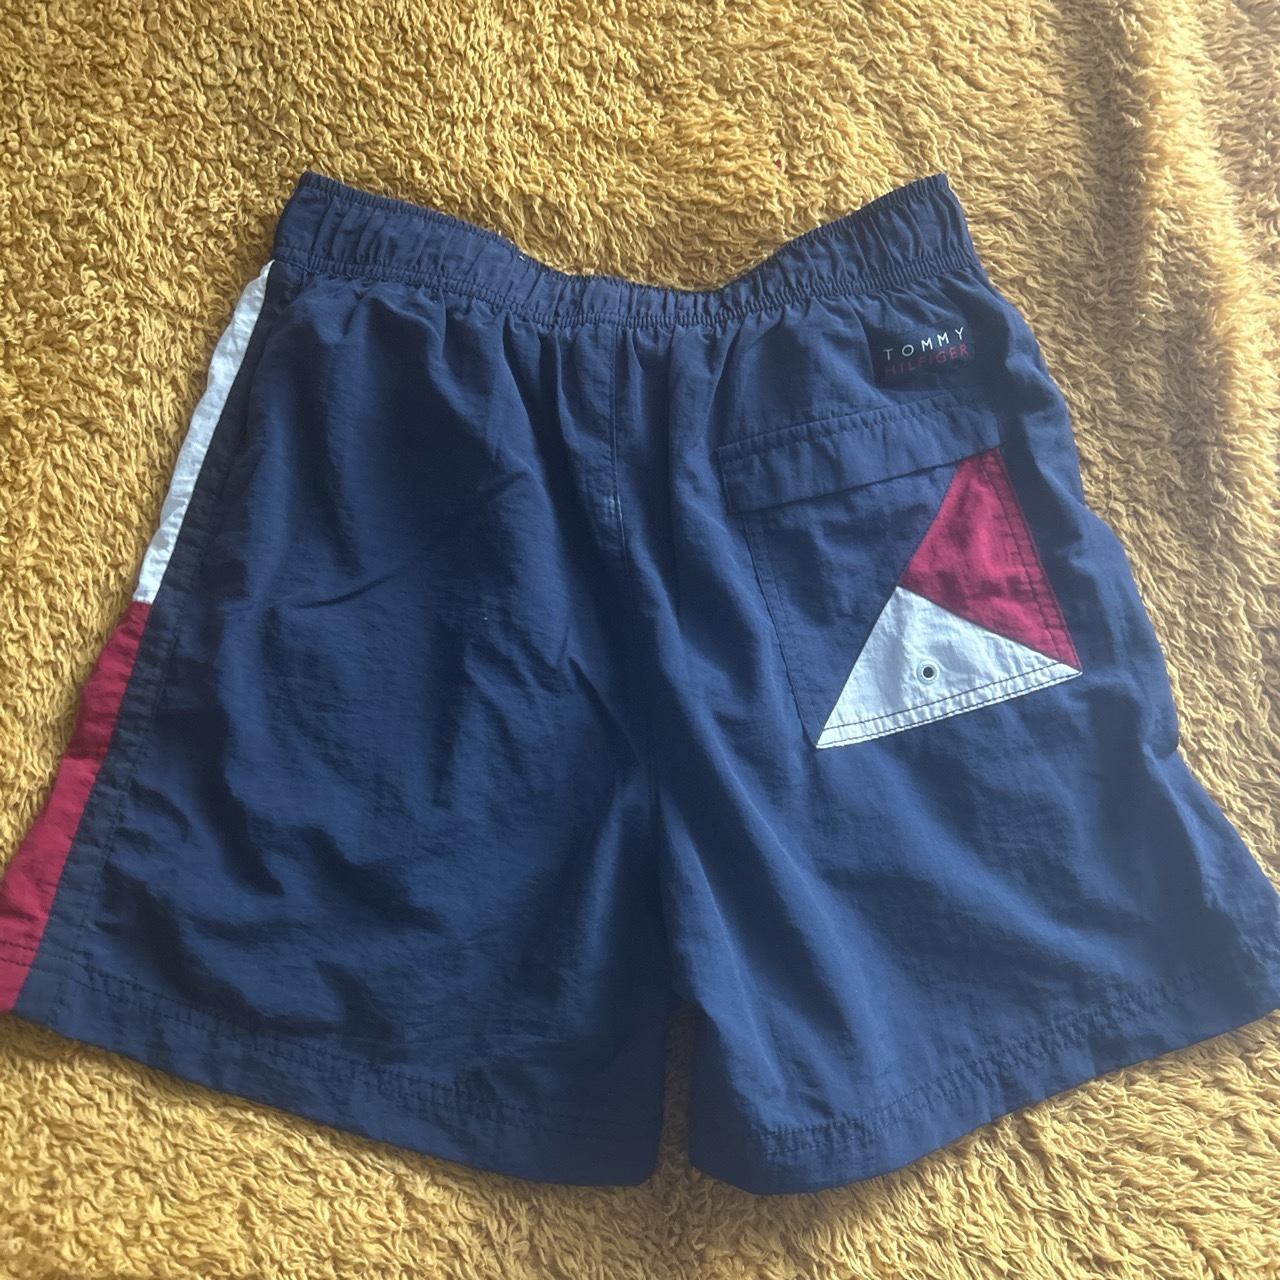 Tommy Hilfiger Shorts Vintage Size S #Shorts... - Depop